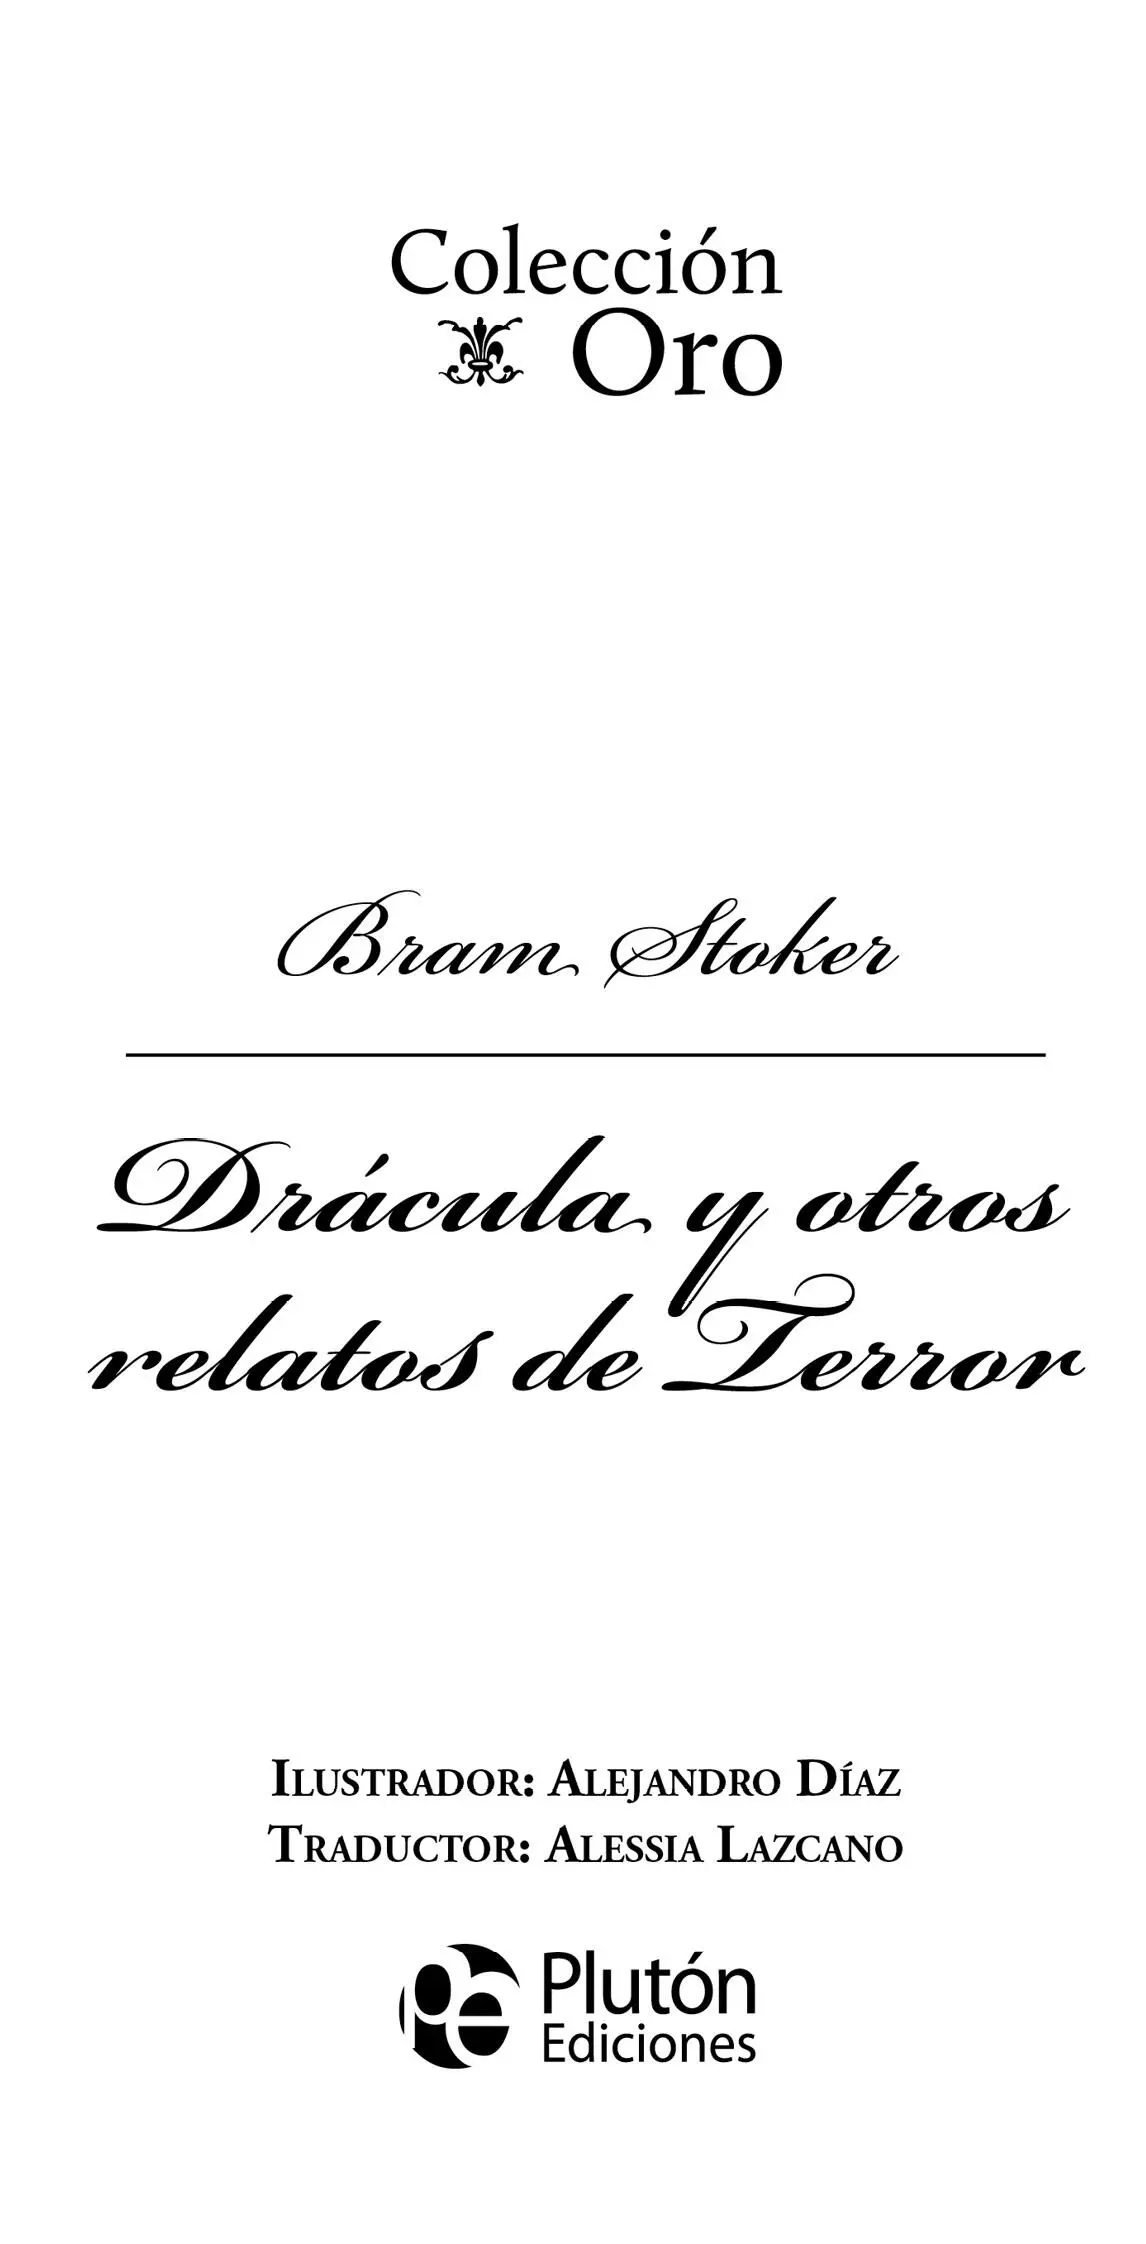 Plutón Ediciones X s l 2020 Traducción Alessia Lazcano Diseño de - фото 1